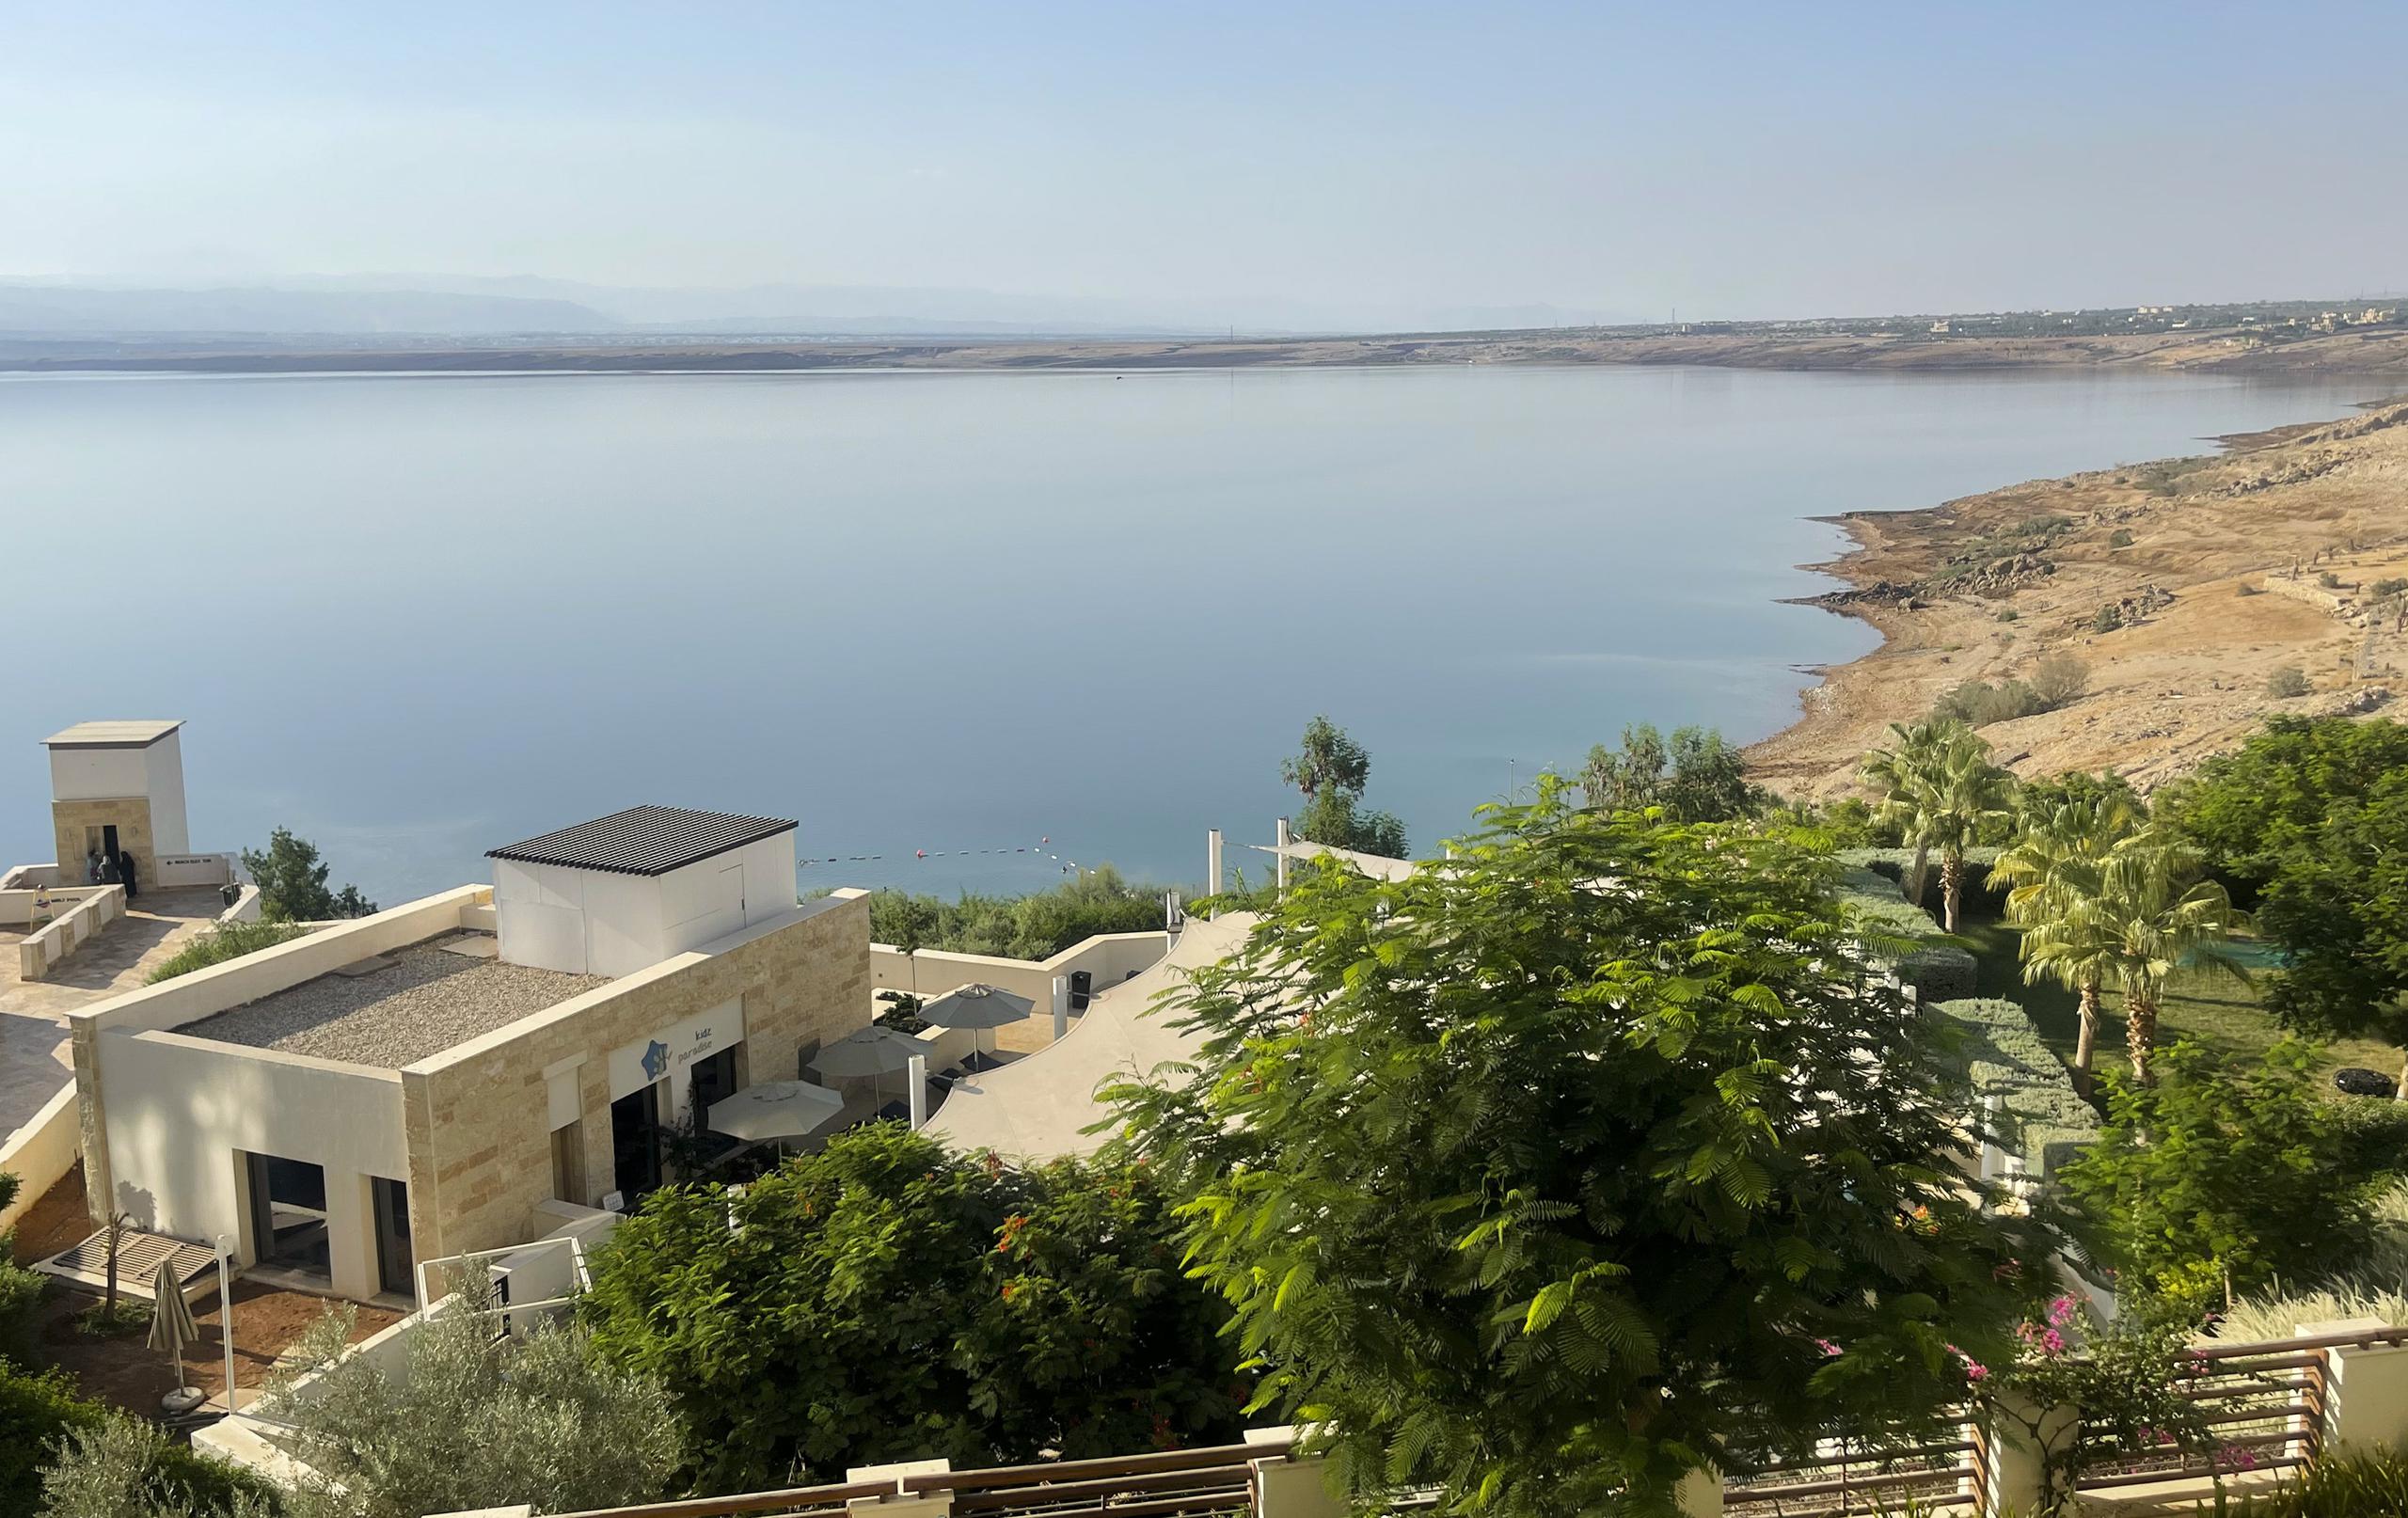 Vista de la costa del Mar Muerto en Jordania. El umbral definido por la ONU para la escasez de agua es de 500,000 litros anuales por persona. EFE/Hayat al Dbeas